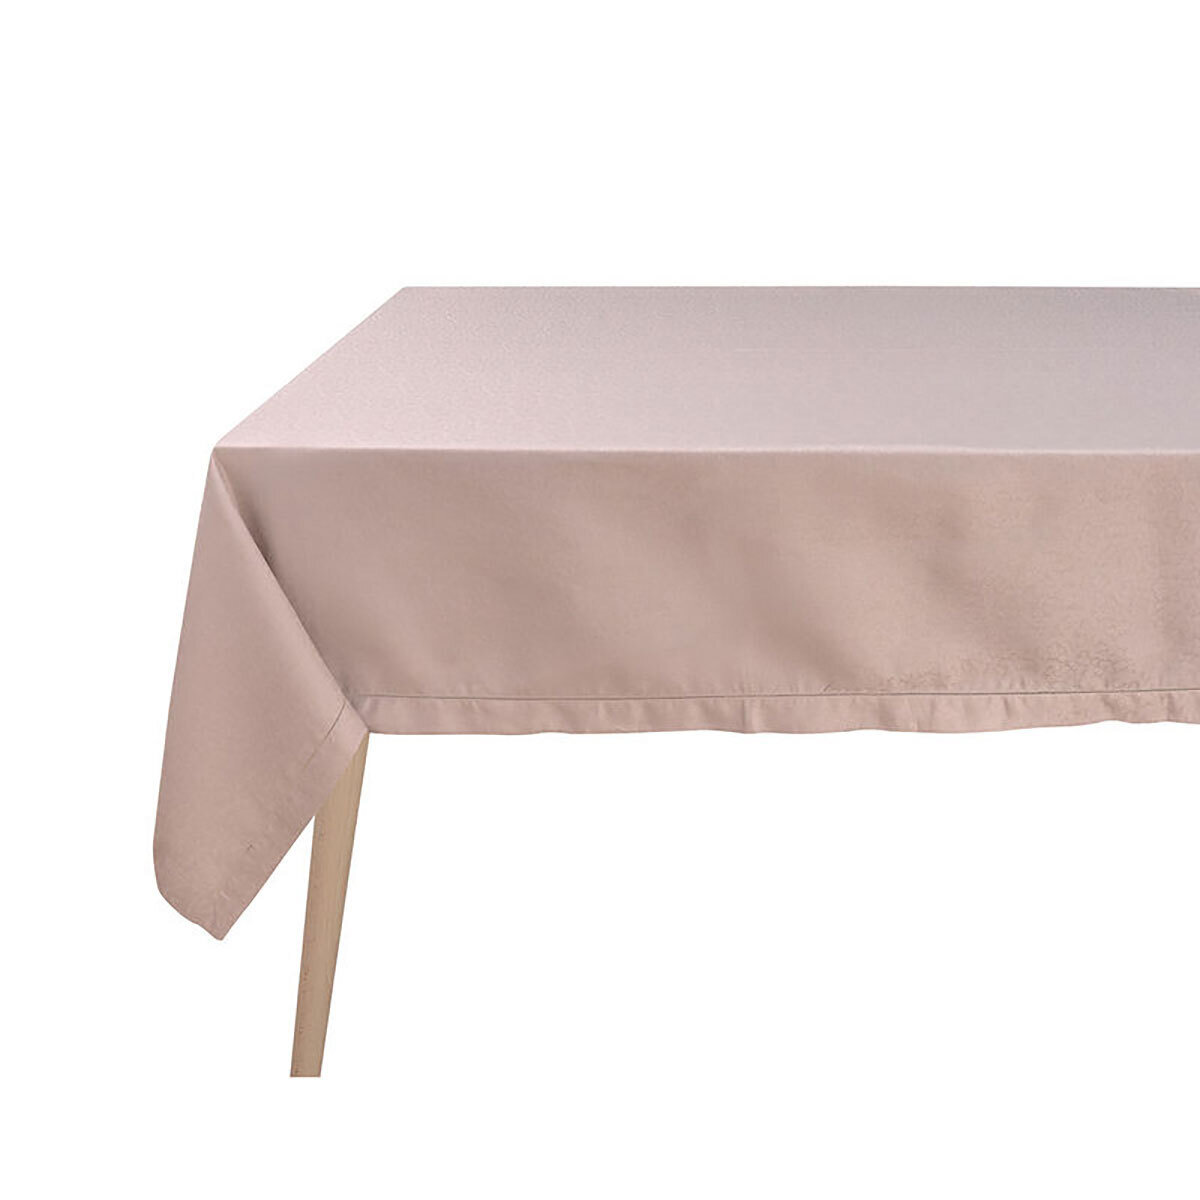 Le Jacquard Francais Portofino Fiori Beige Tablecloth Diameter 94 Inch 28620